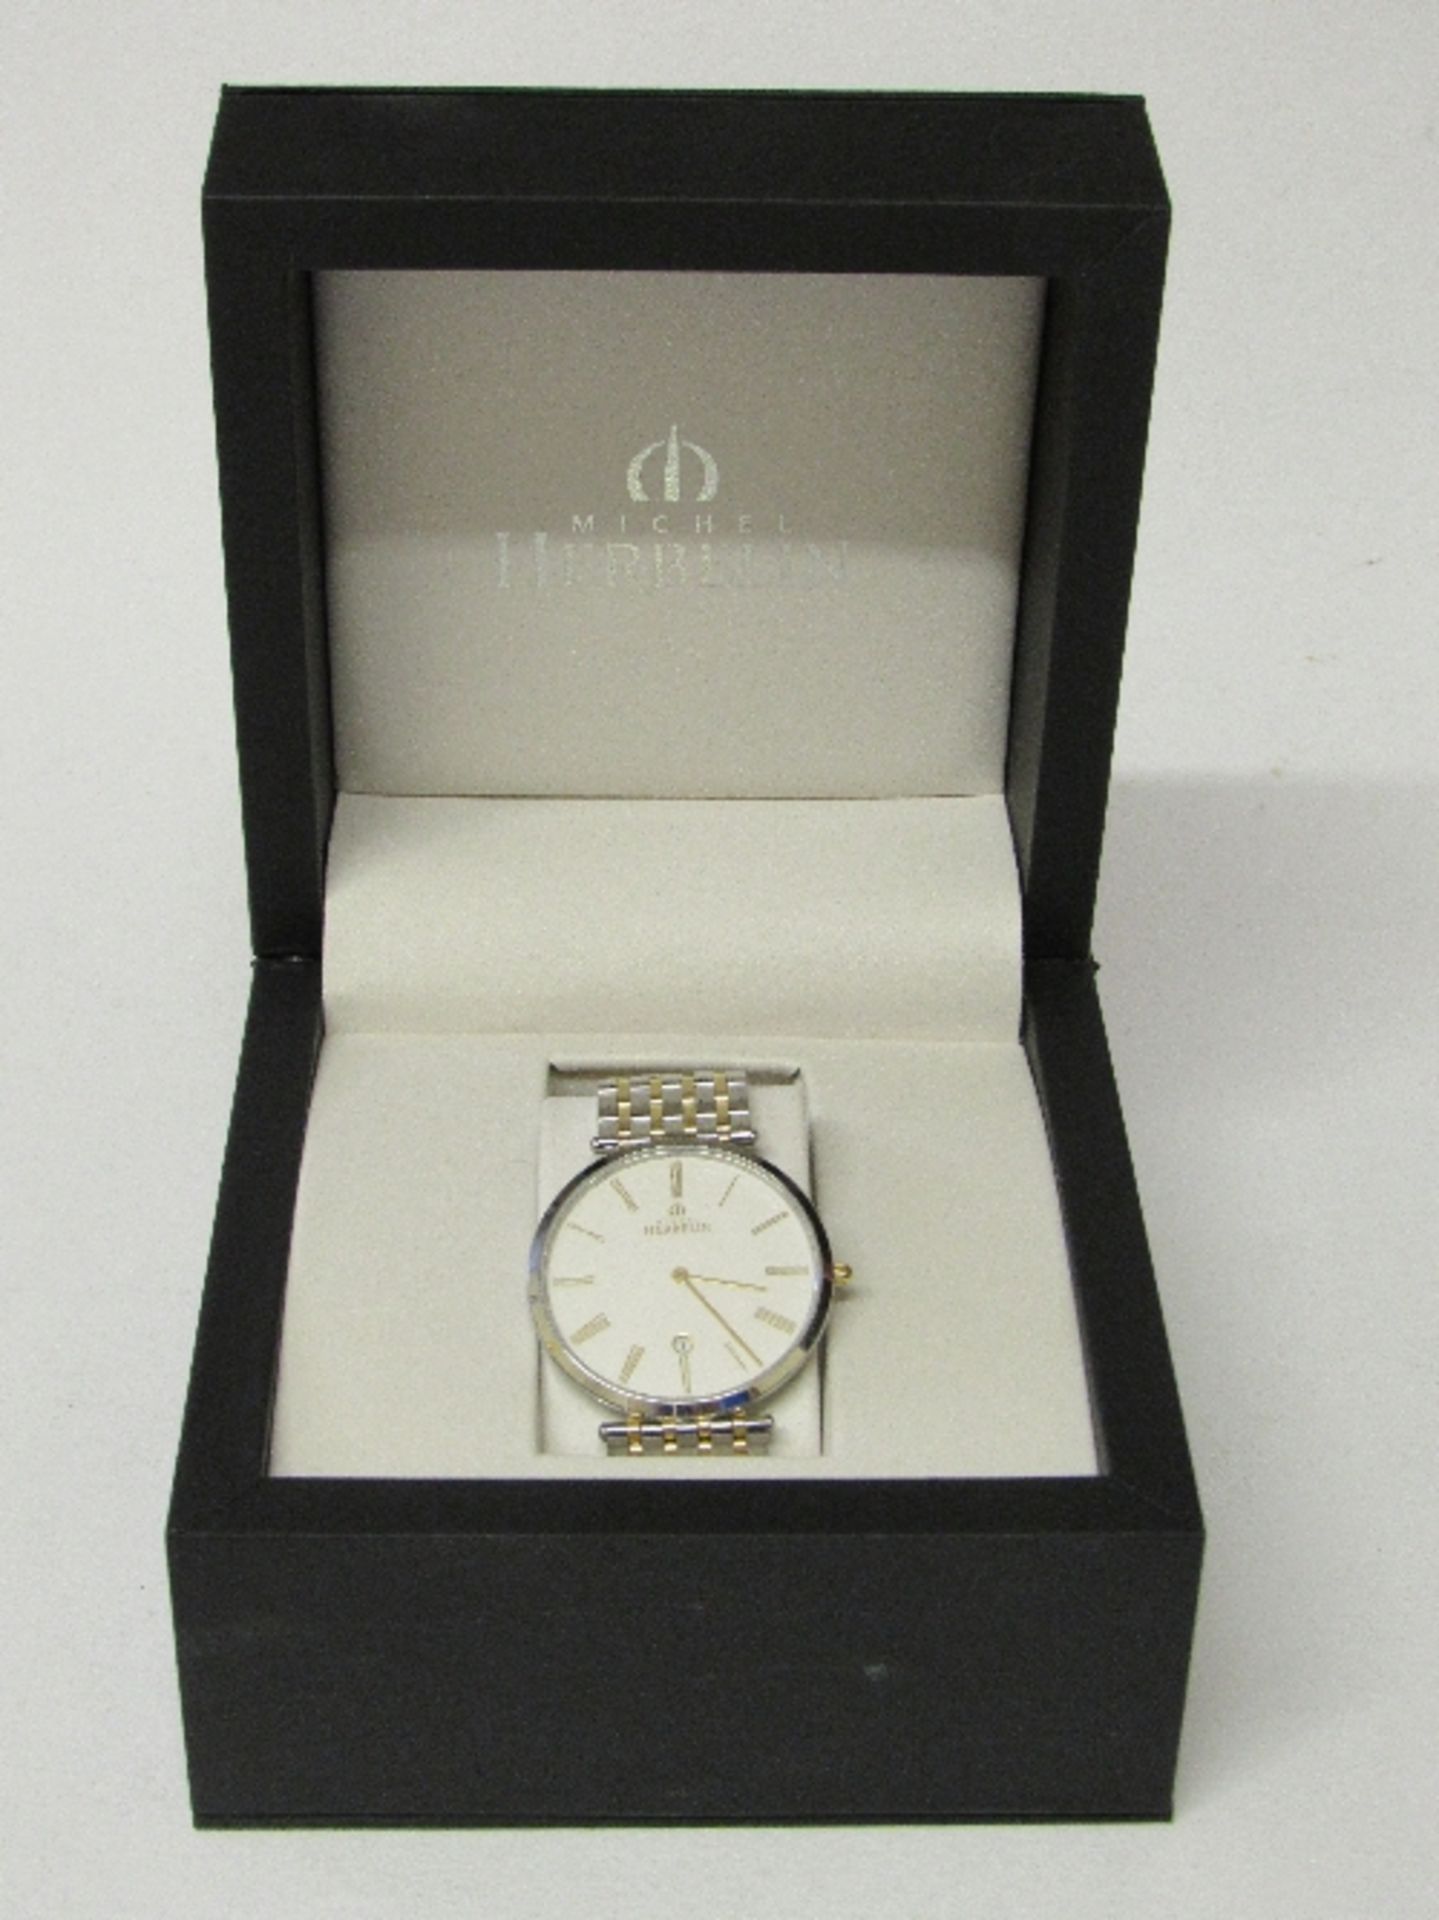 Michel Herbelin gentleman's wrist watch, new, boxed, going order c/w 3 extra links. Estimate £100-